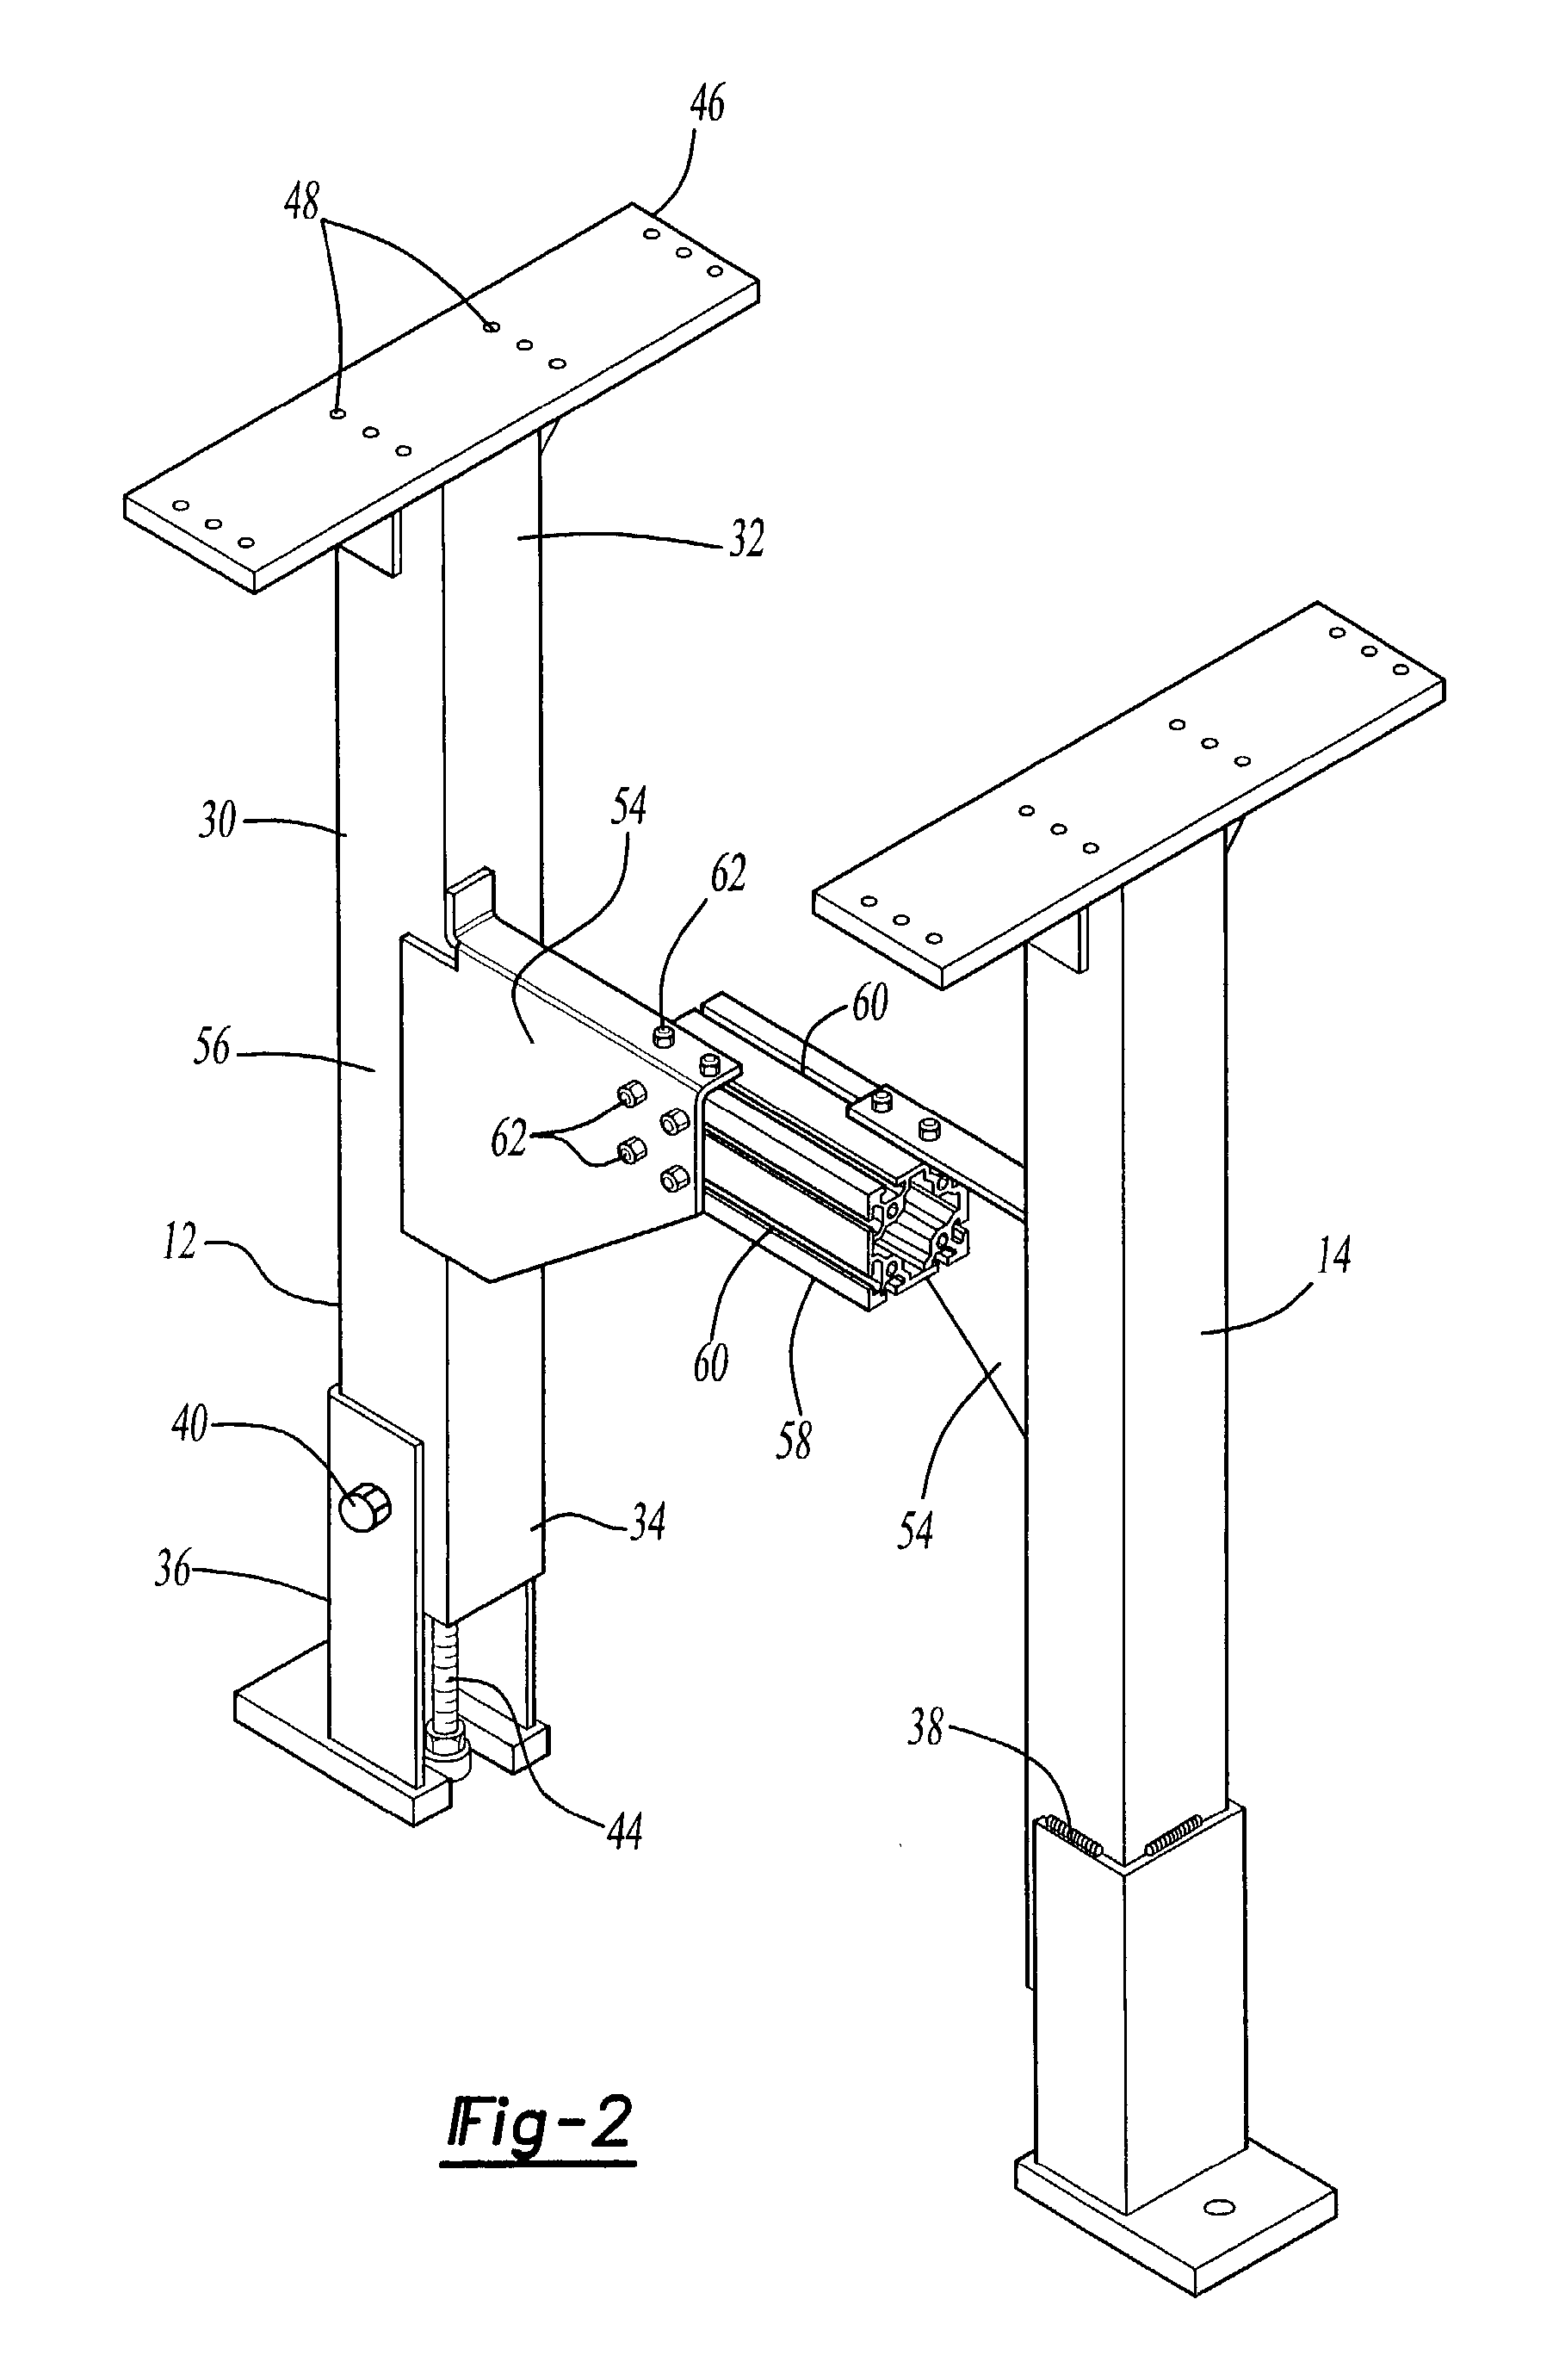 Modular roller conveyor system